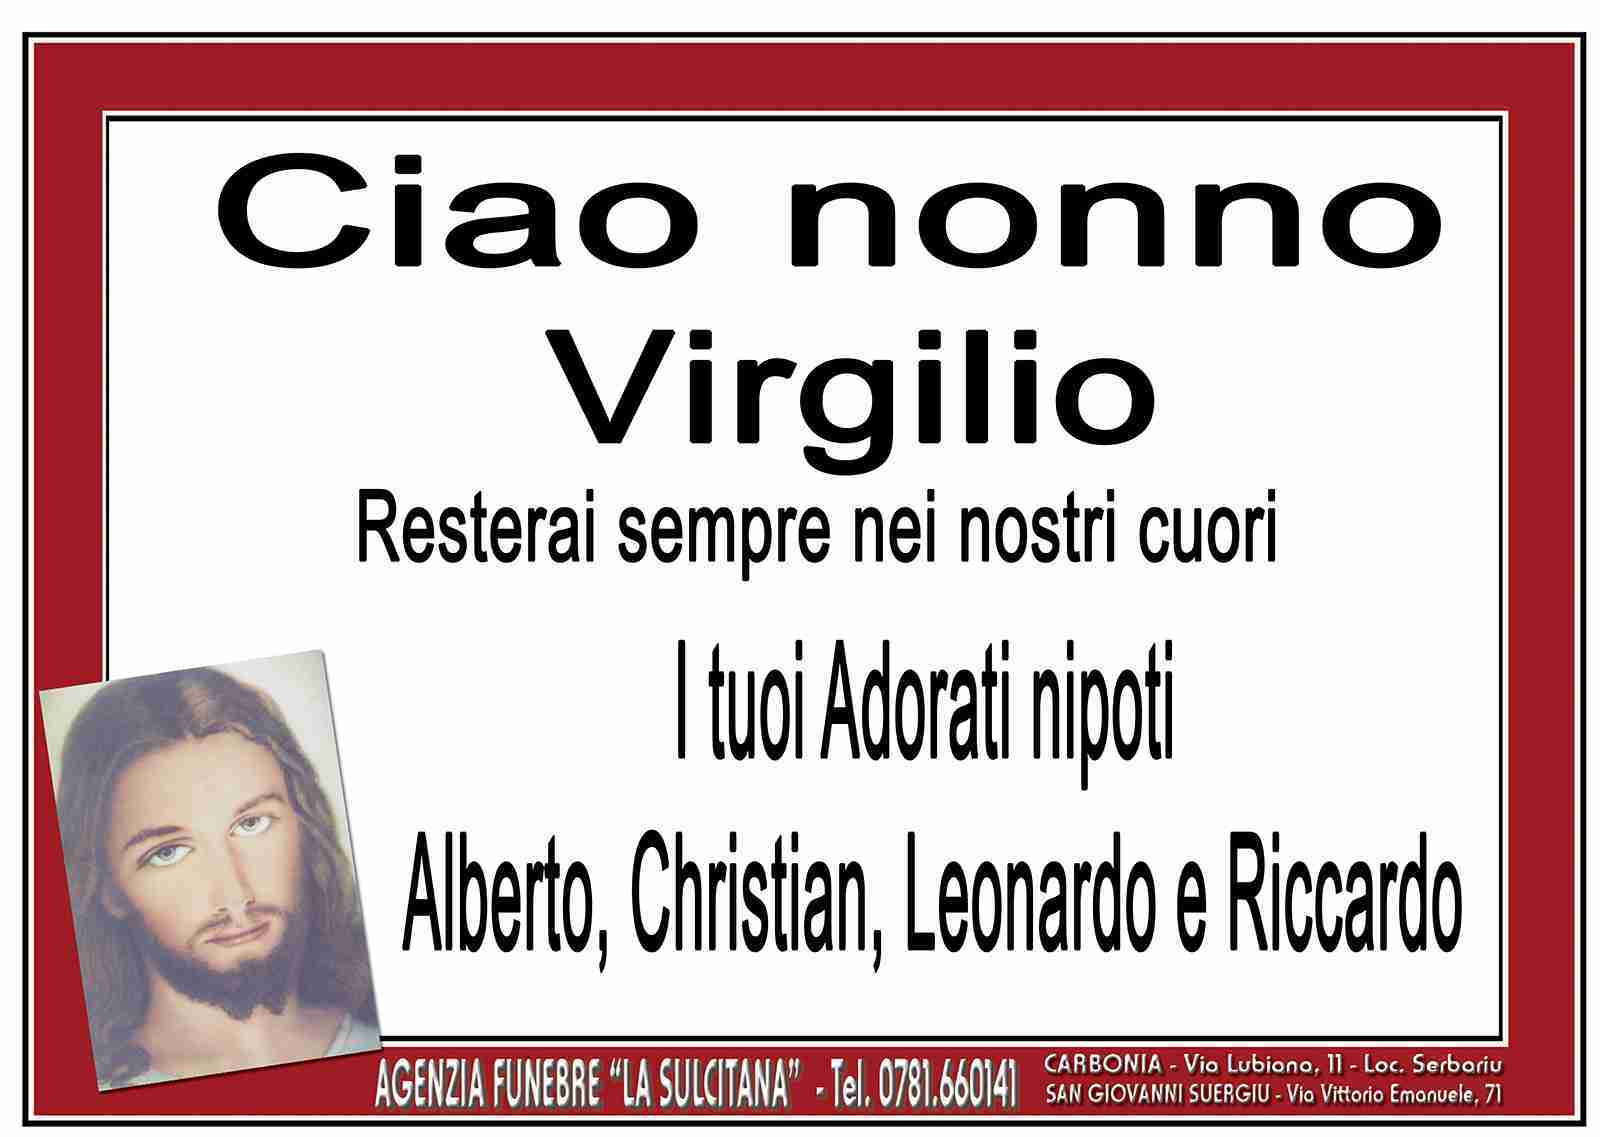 Benatti Virgilio Vincenzo